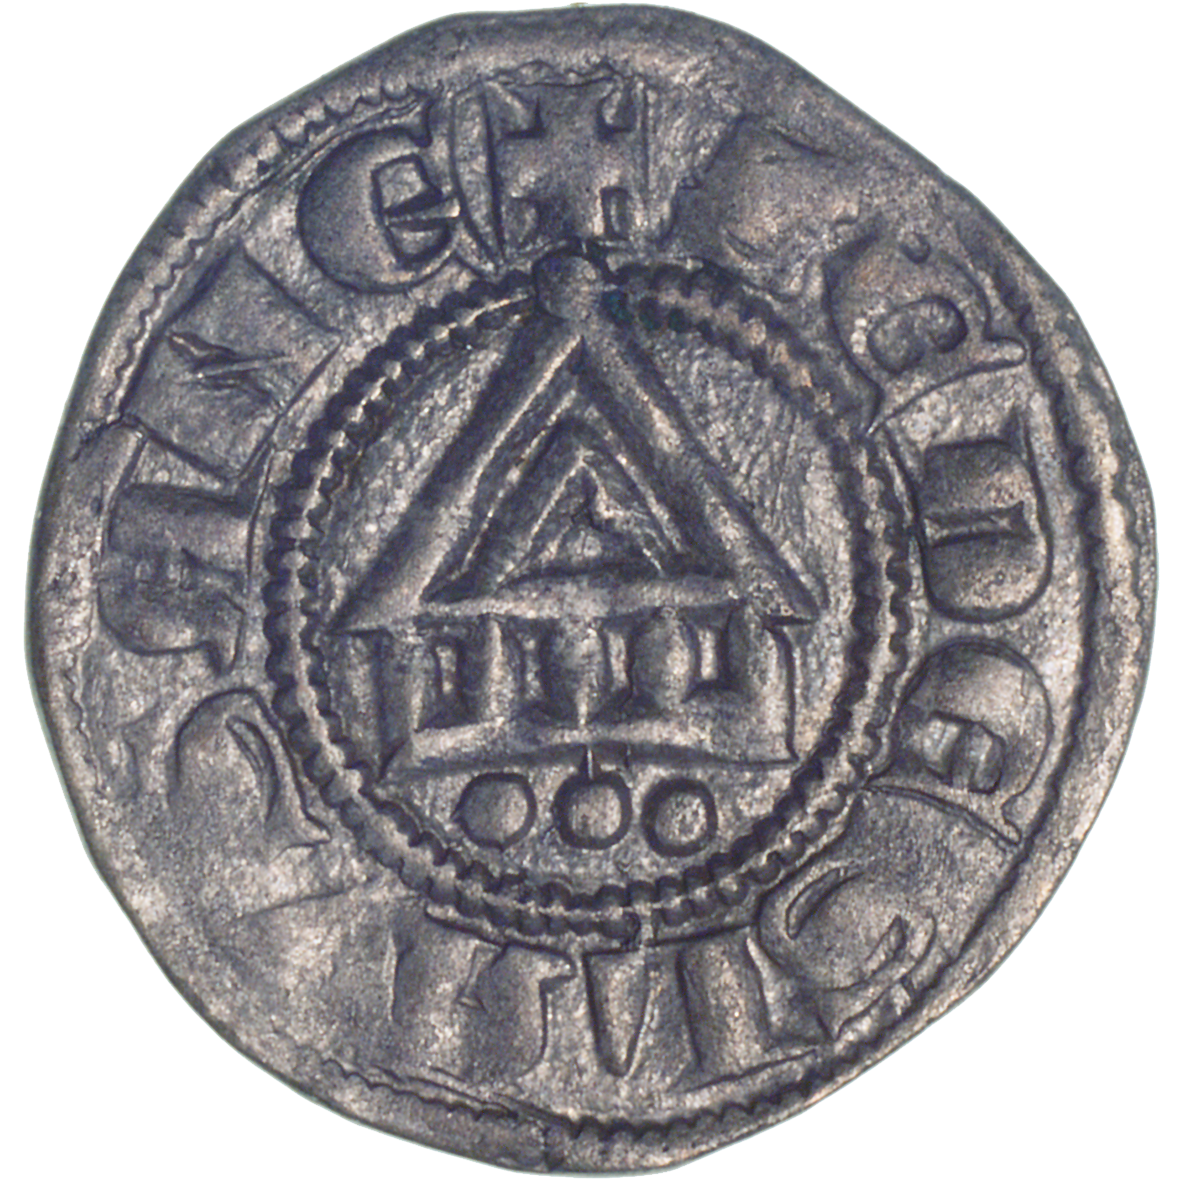 Bishopric of Lausanne, Denier (obverse)